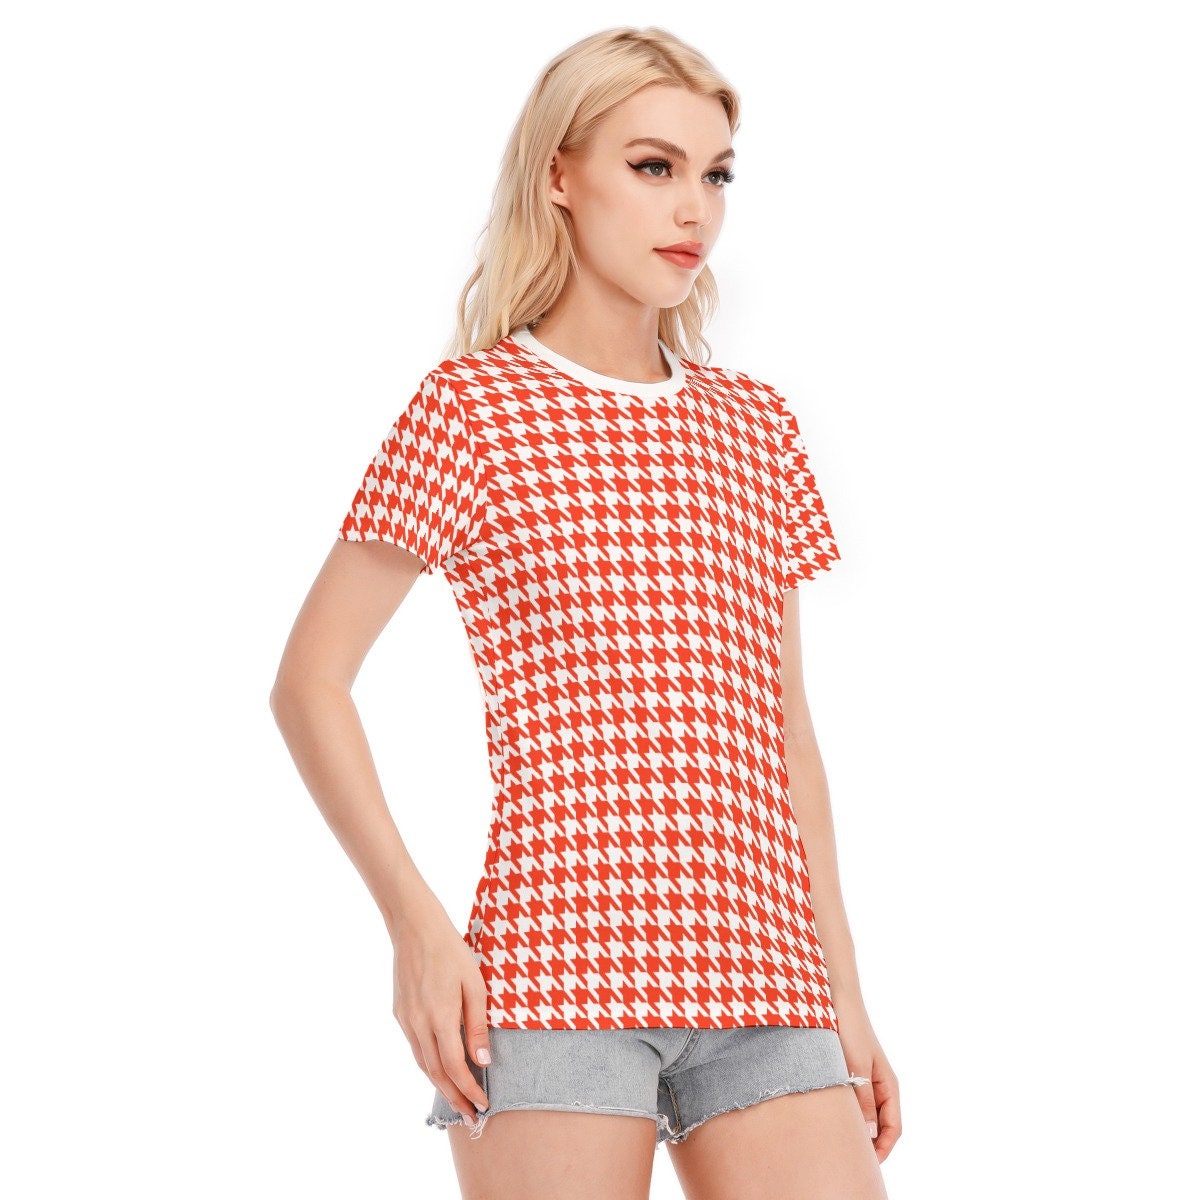 Haut rétro, Tshirt rétro, Haut Houndstooh, Tshirt pied-de-poule, T-shirts pour femmes, haut de style vintage, haut vintage, haut rétro rouge, haut des années 60